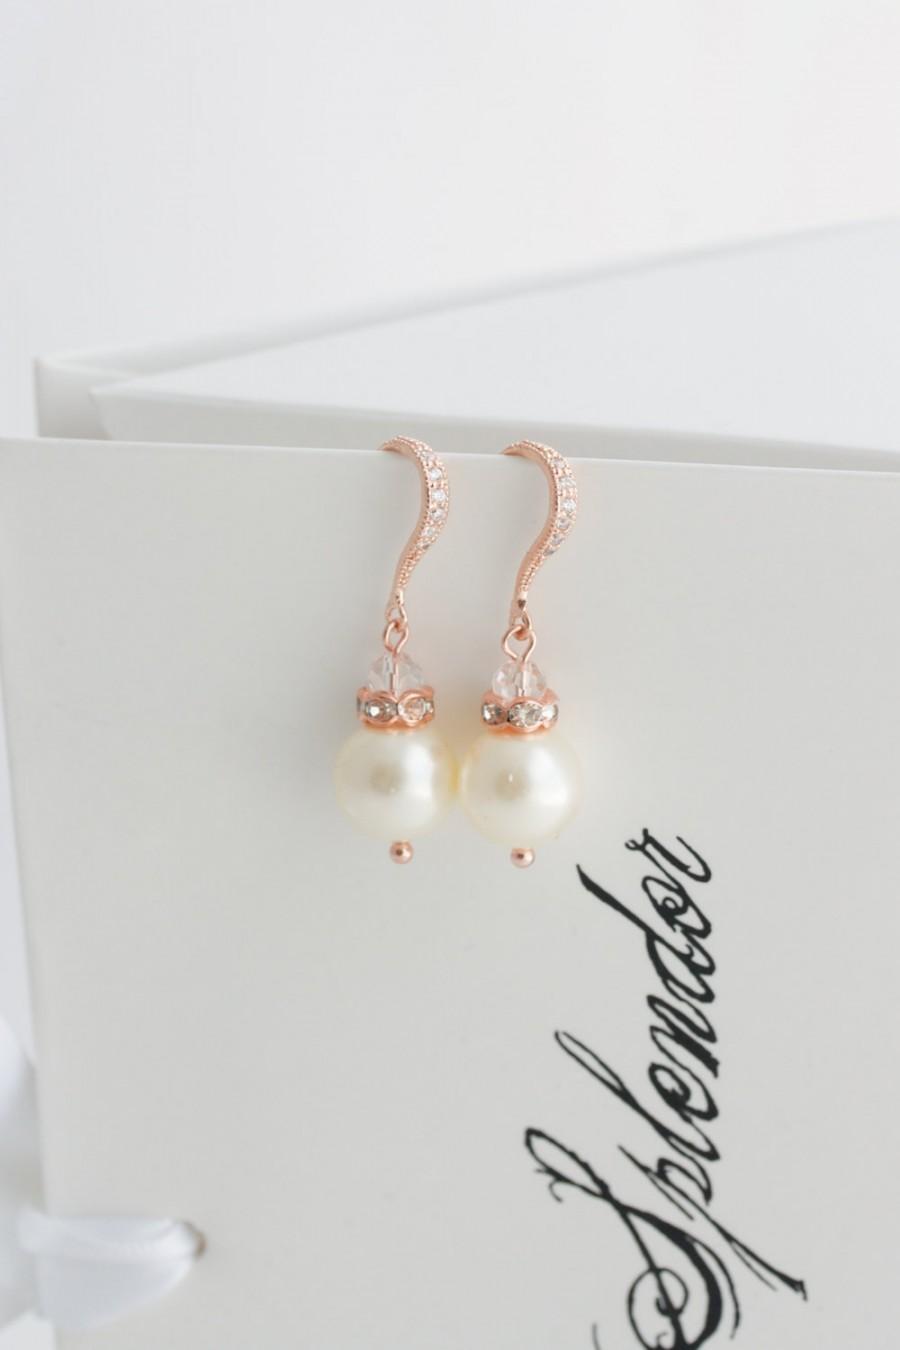 Wedding - Bridal Pearl Earrings Simple Wedding Earrings Rose Gold Pearl Drop Earrings Crystal Hook Wedding Jewlery SIMPLE NEVE